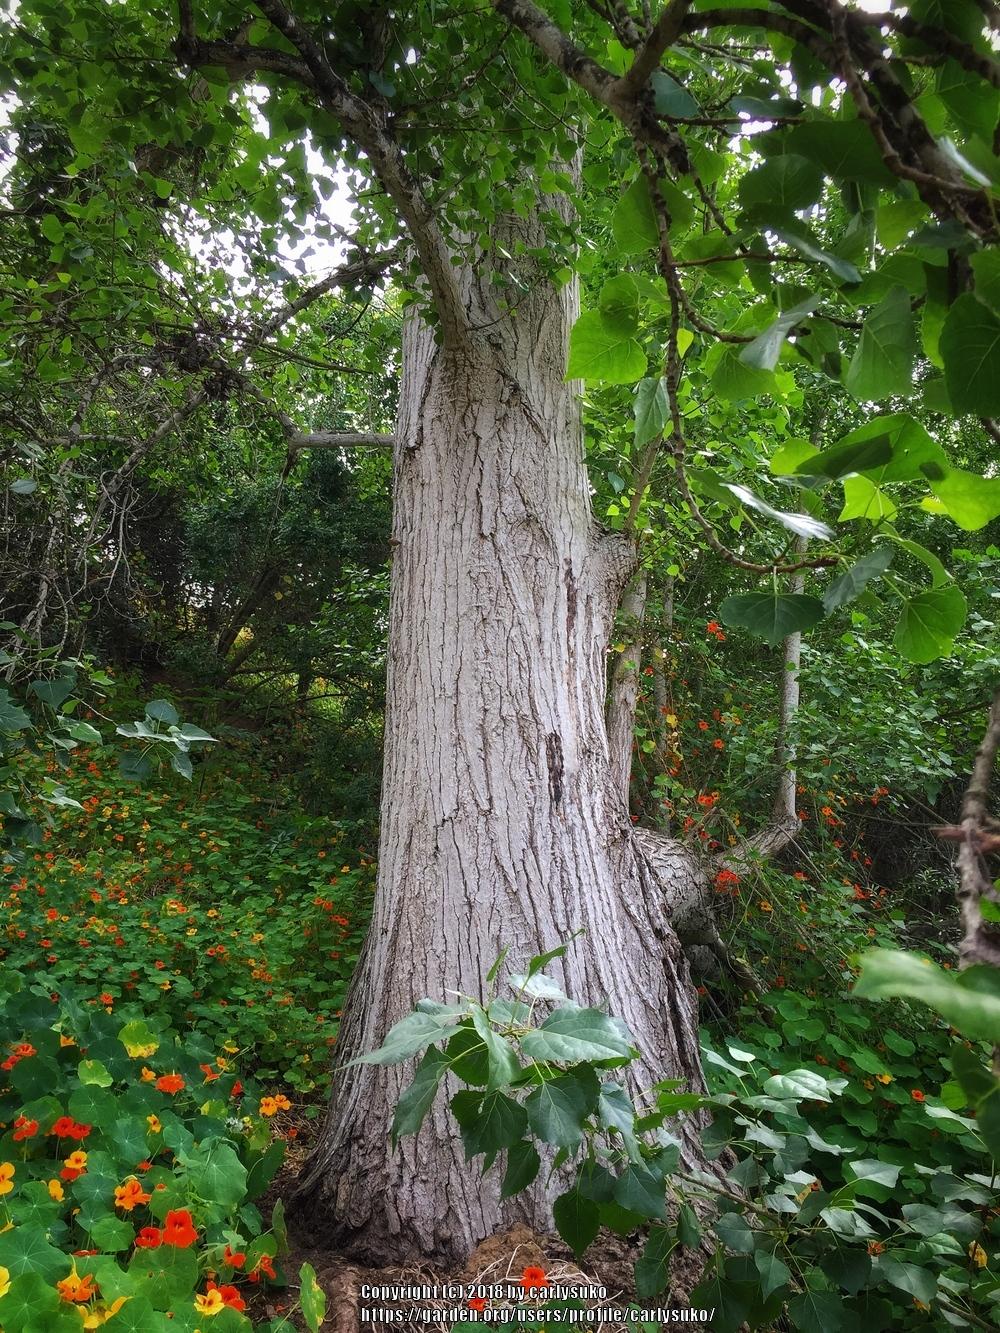 Photo of Fremont Cottonwood (Populus fremontii) uploaded by carlysuko